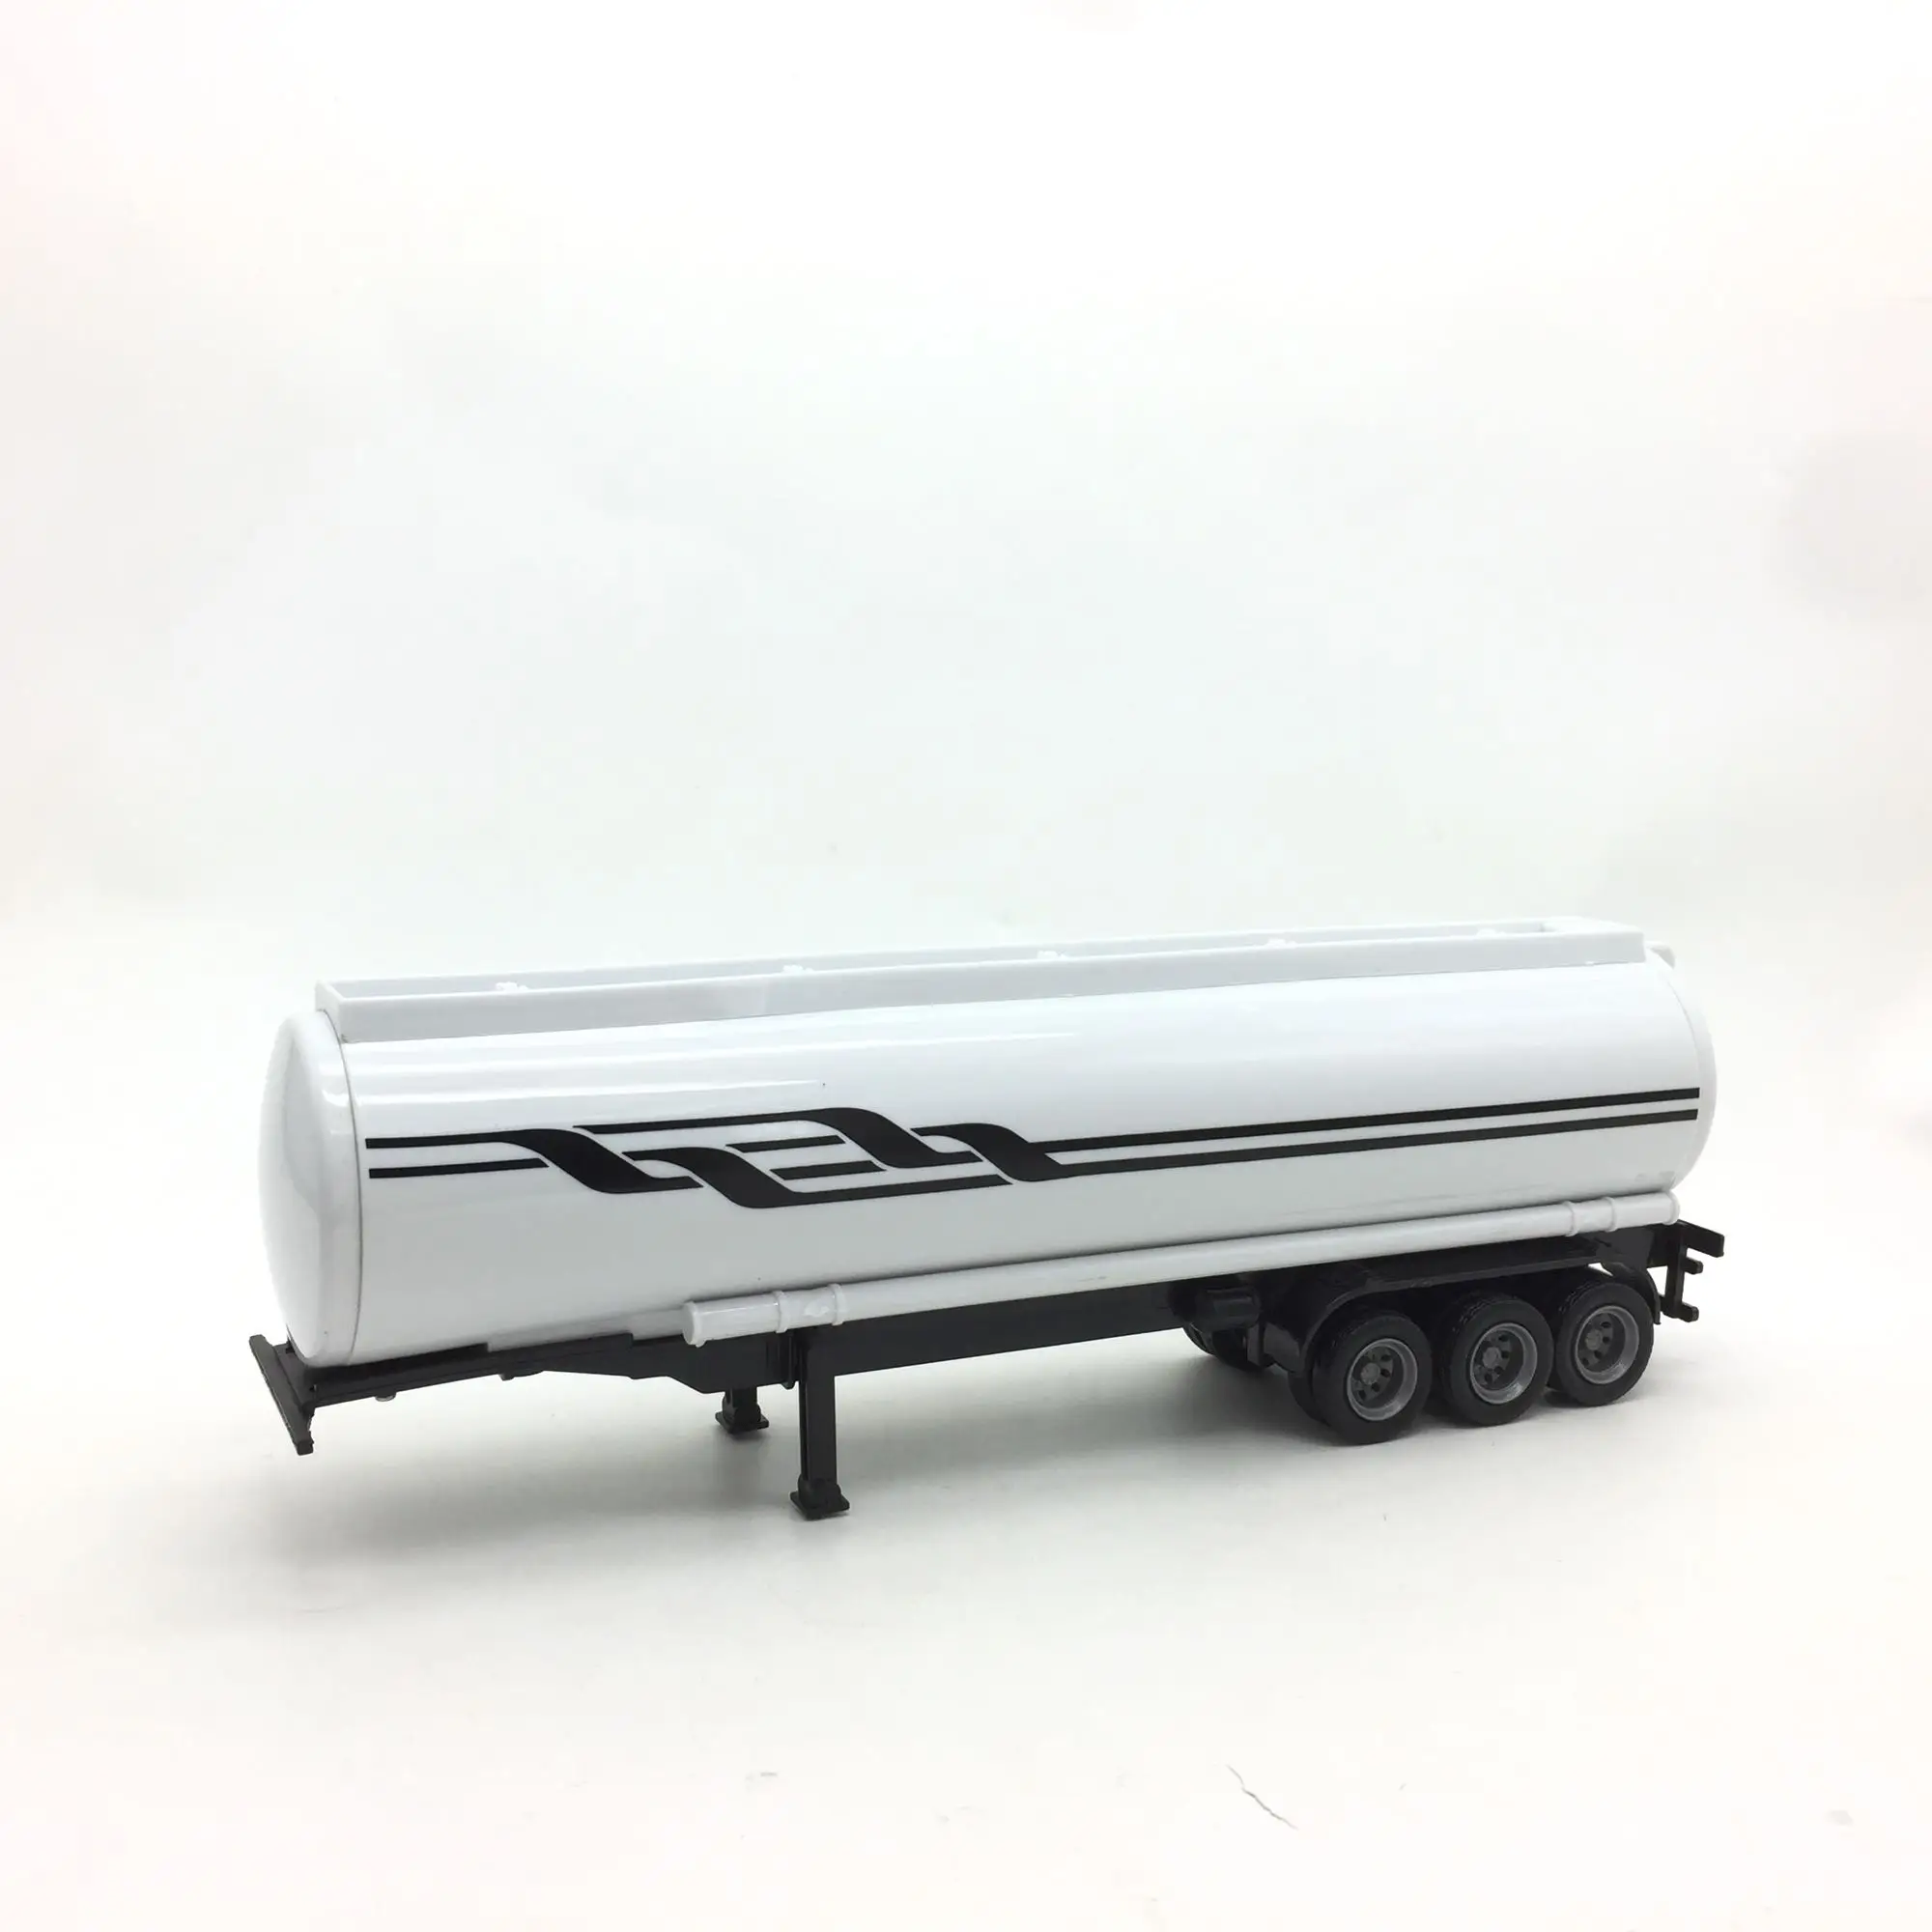 28 cm escala 1:43 escala camión modelo de modificación de accesorios de remolque de vehículos del Fundido de Remolque de juguete de plástico F fans de regalo de colección 0